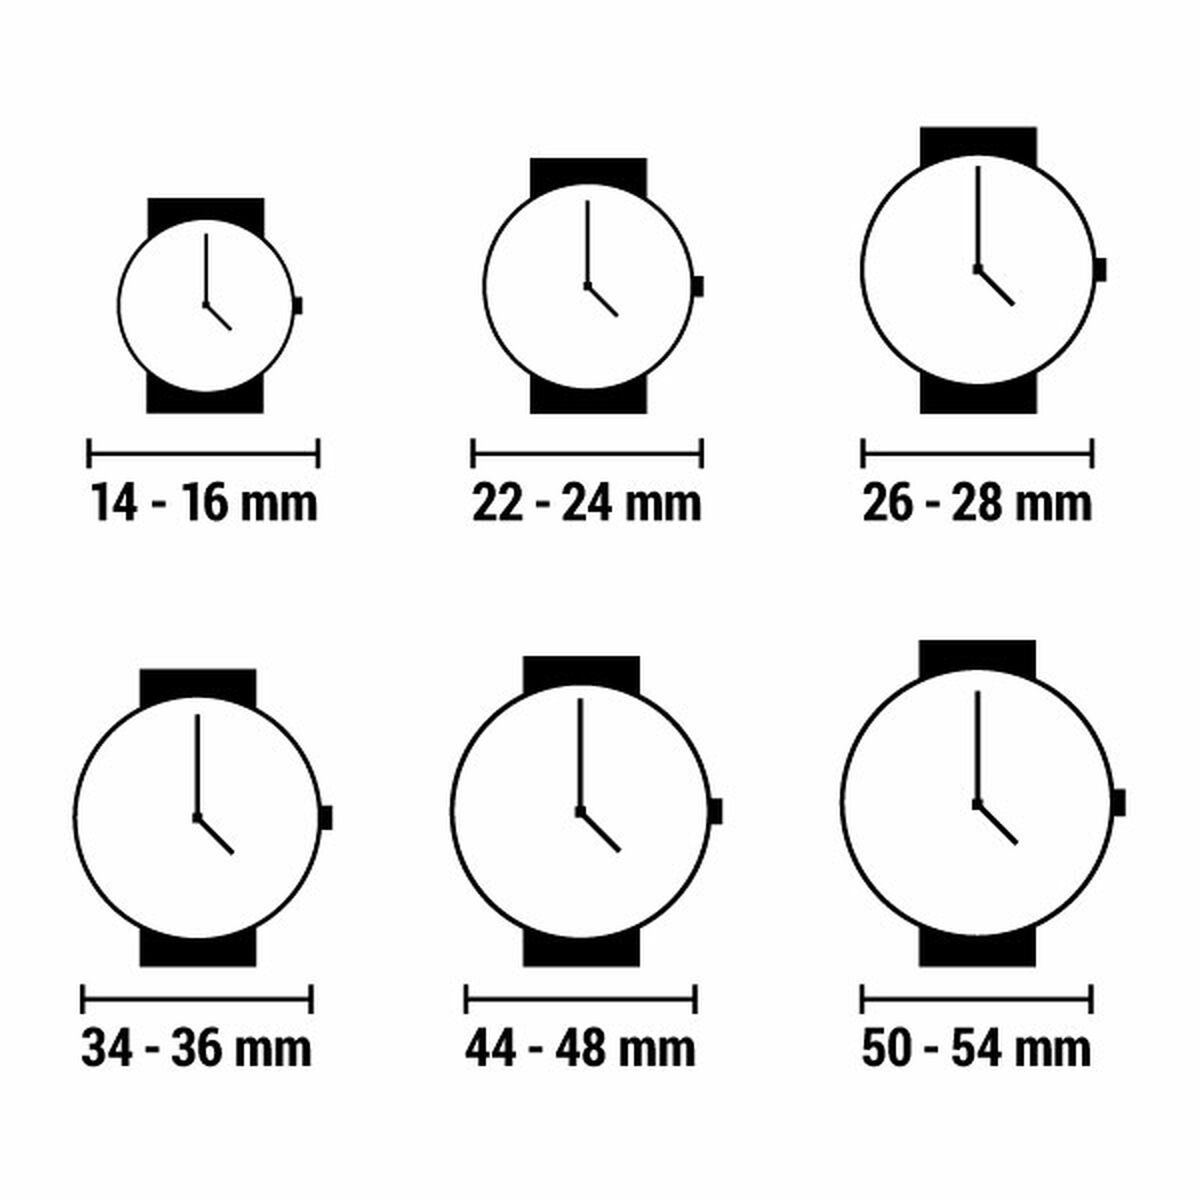 Horloge Dames Esprit ES1L296M0065